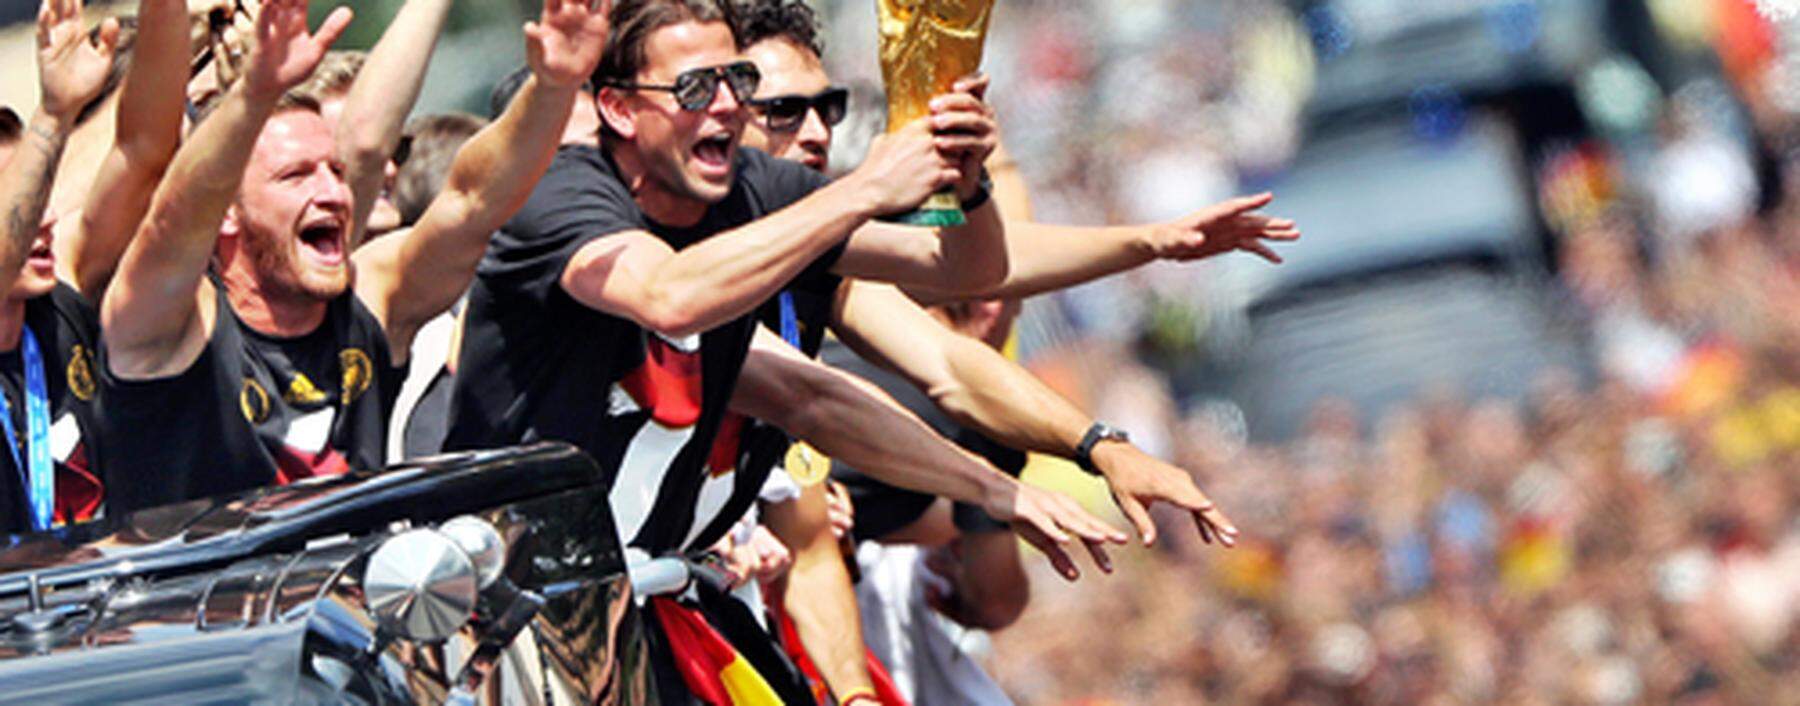 World Cup 2014 - Empfang Nationalmannschaft